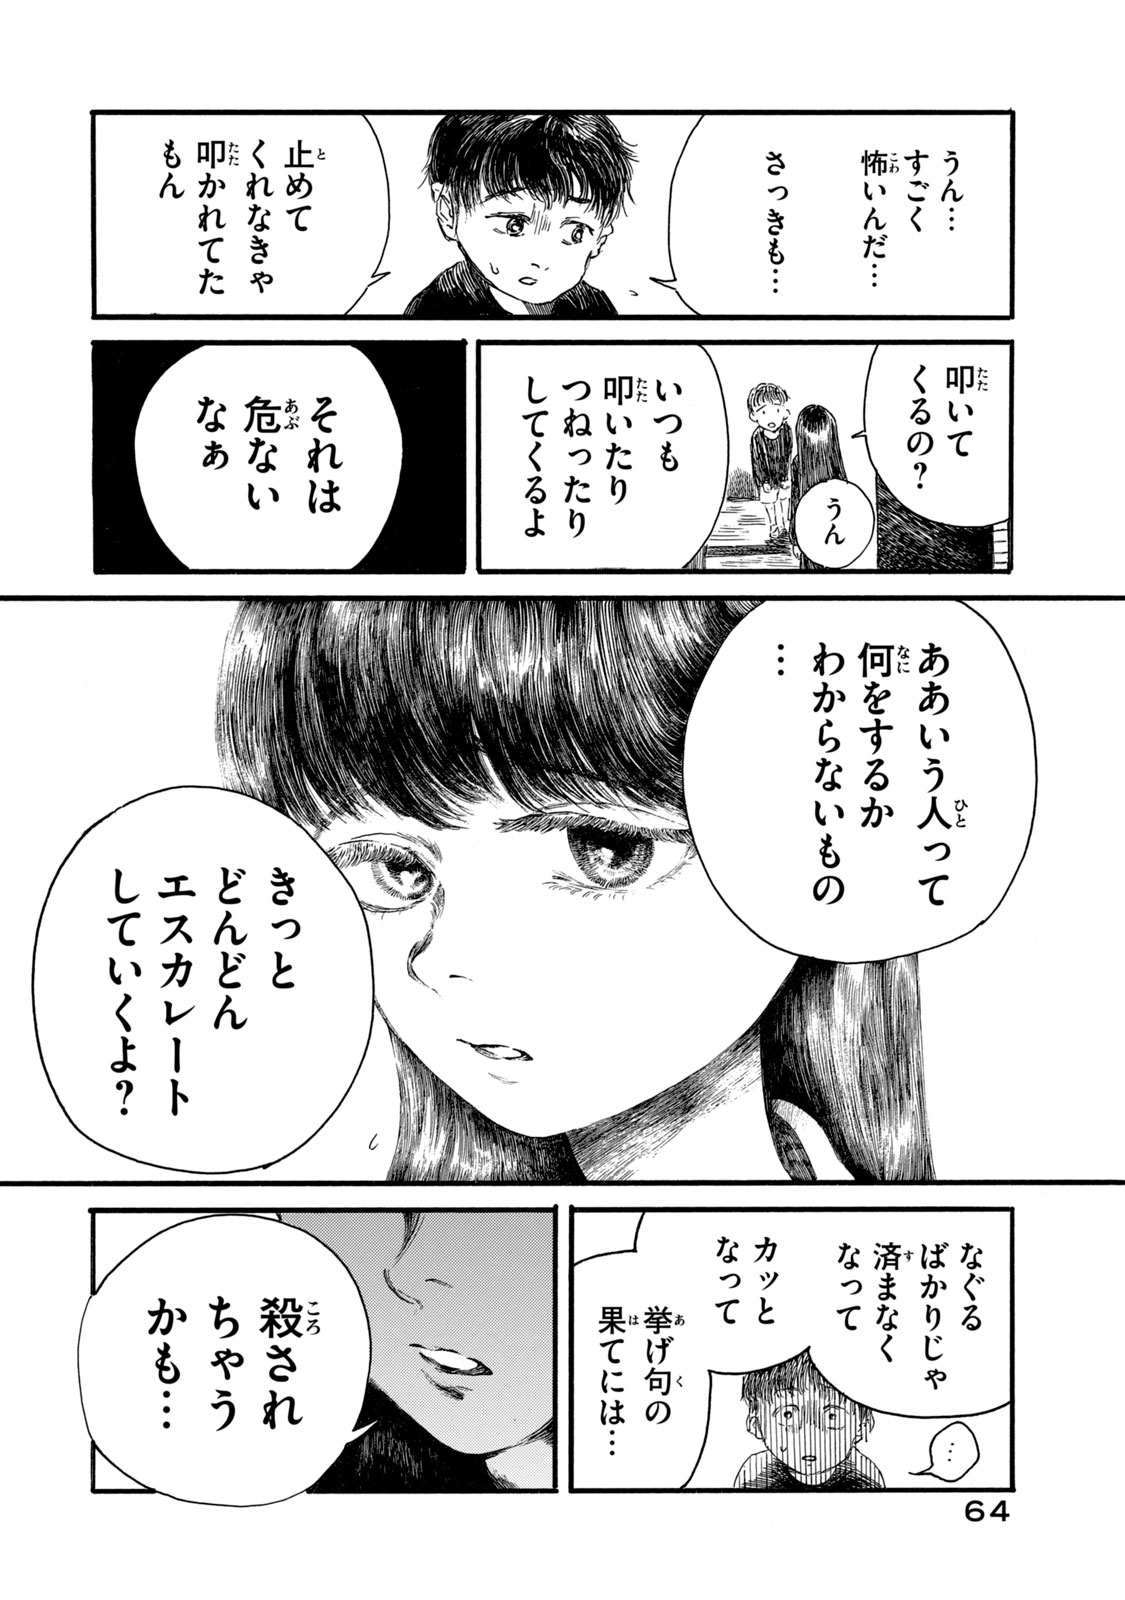 Watashi no Hara no Naka no Bakemono - Chapter 11 - Page 2